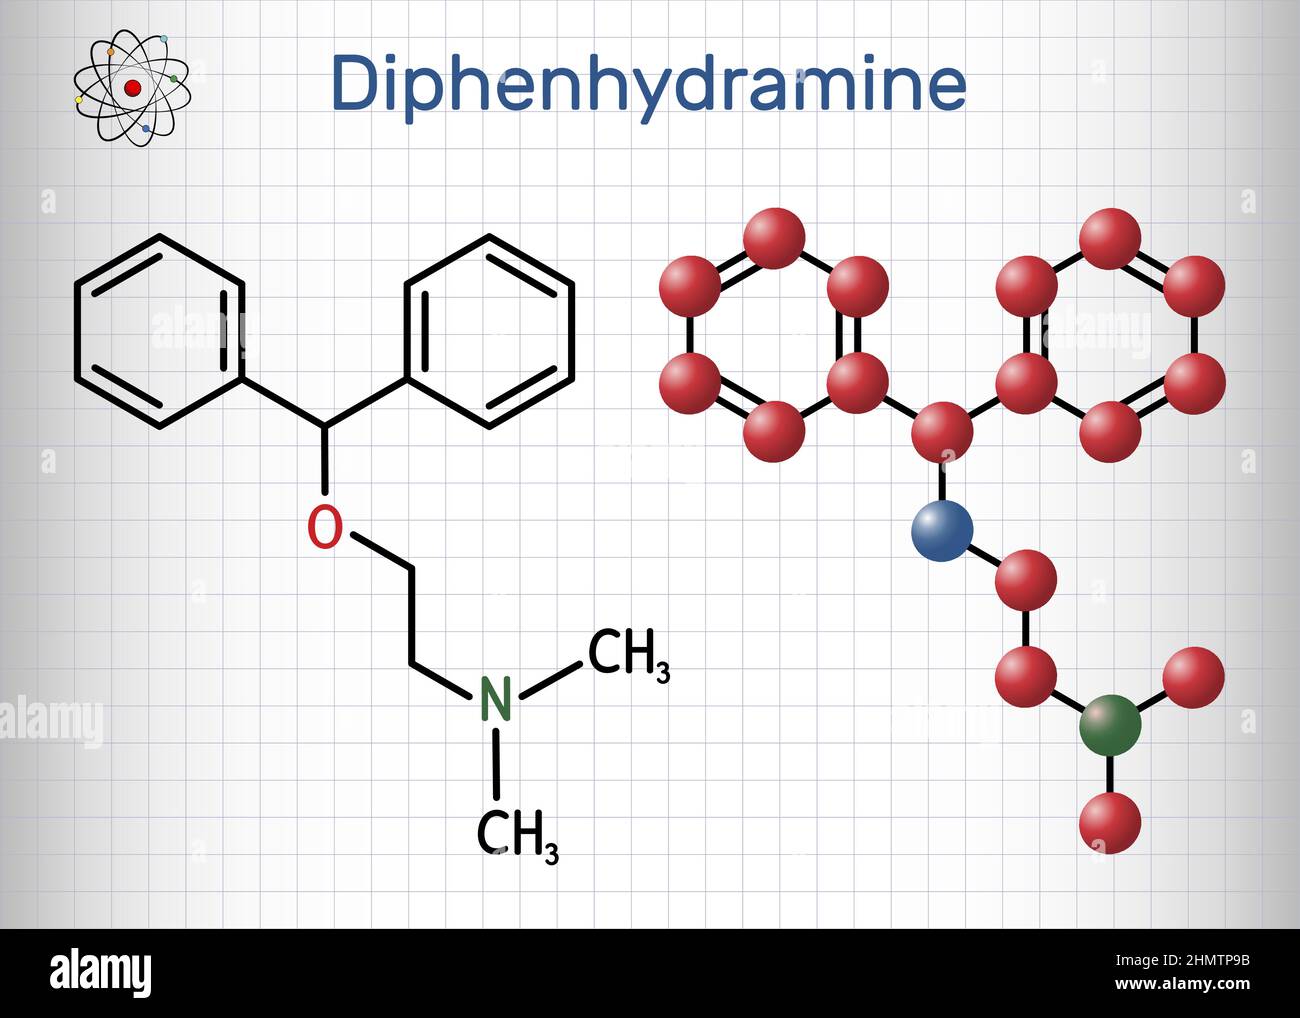 Diphenhydramin, Molekül. Es ist ein H1-Rezeptor-Antihistamin, das bei der Behandlung von saisonalen Allergien eingesetzt wird. Strukturelle chemische Formel und Molekülmodell Stock Vektor